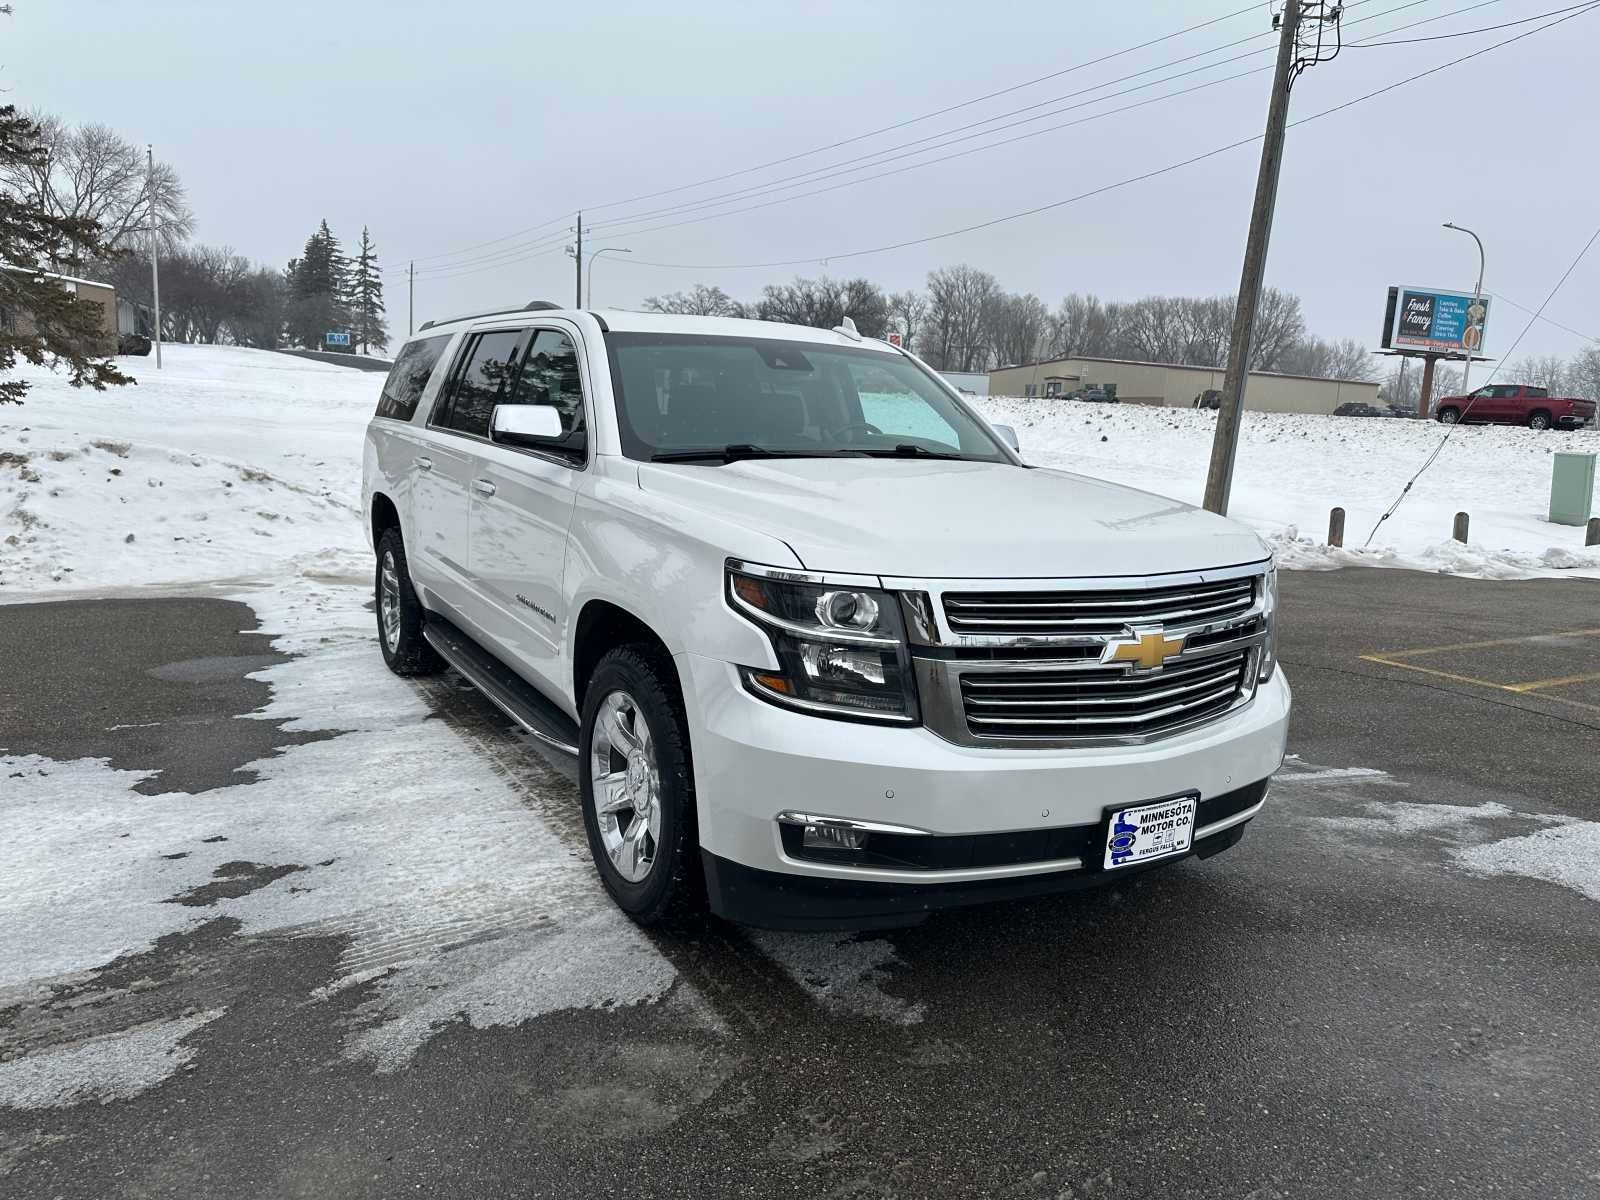 Used 2019 Chevrolet Suburban Premier with VIN 1GNSKJKC1KR285202 for sale in Fergus Falls, Minnesota